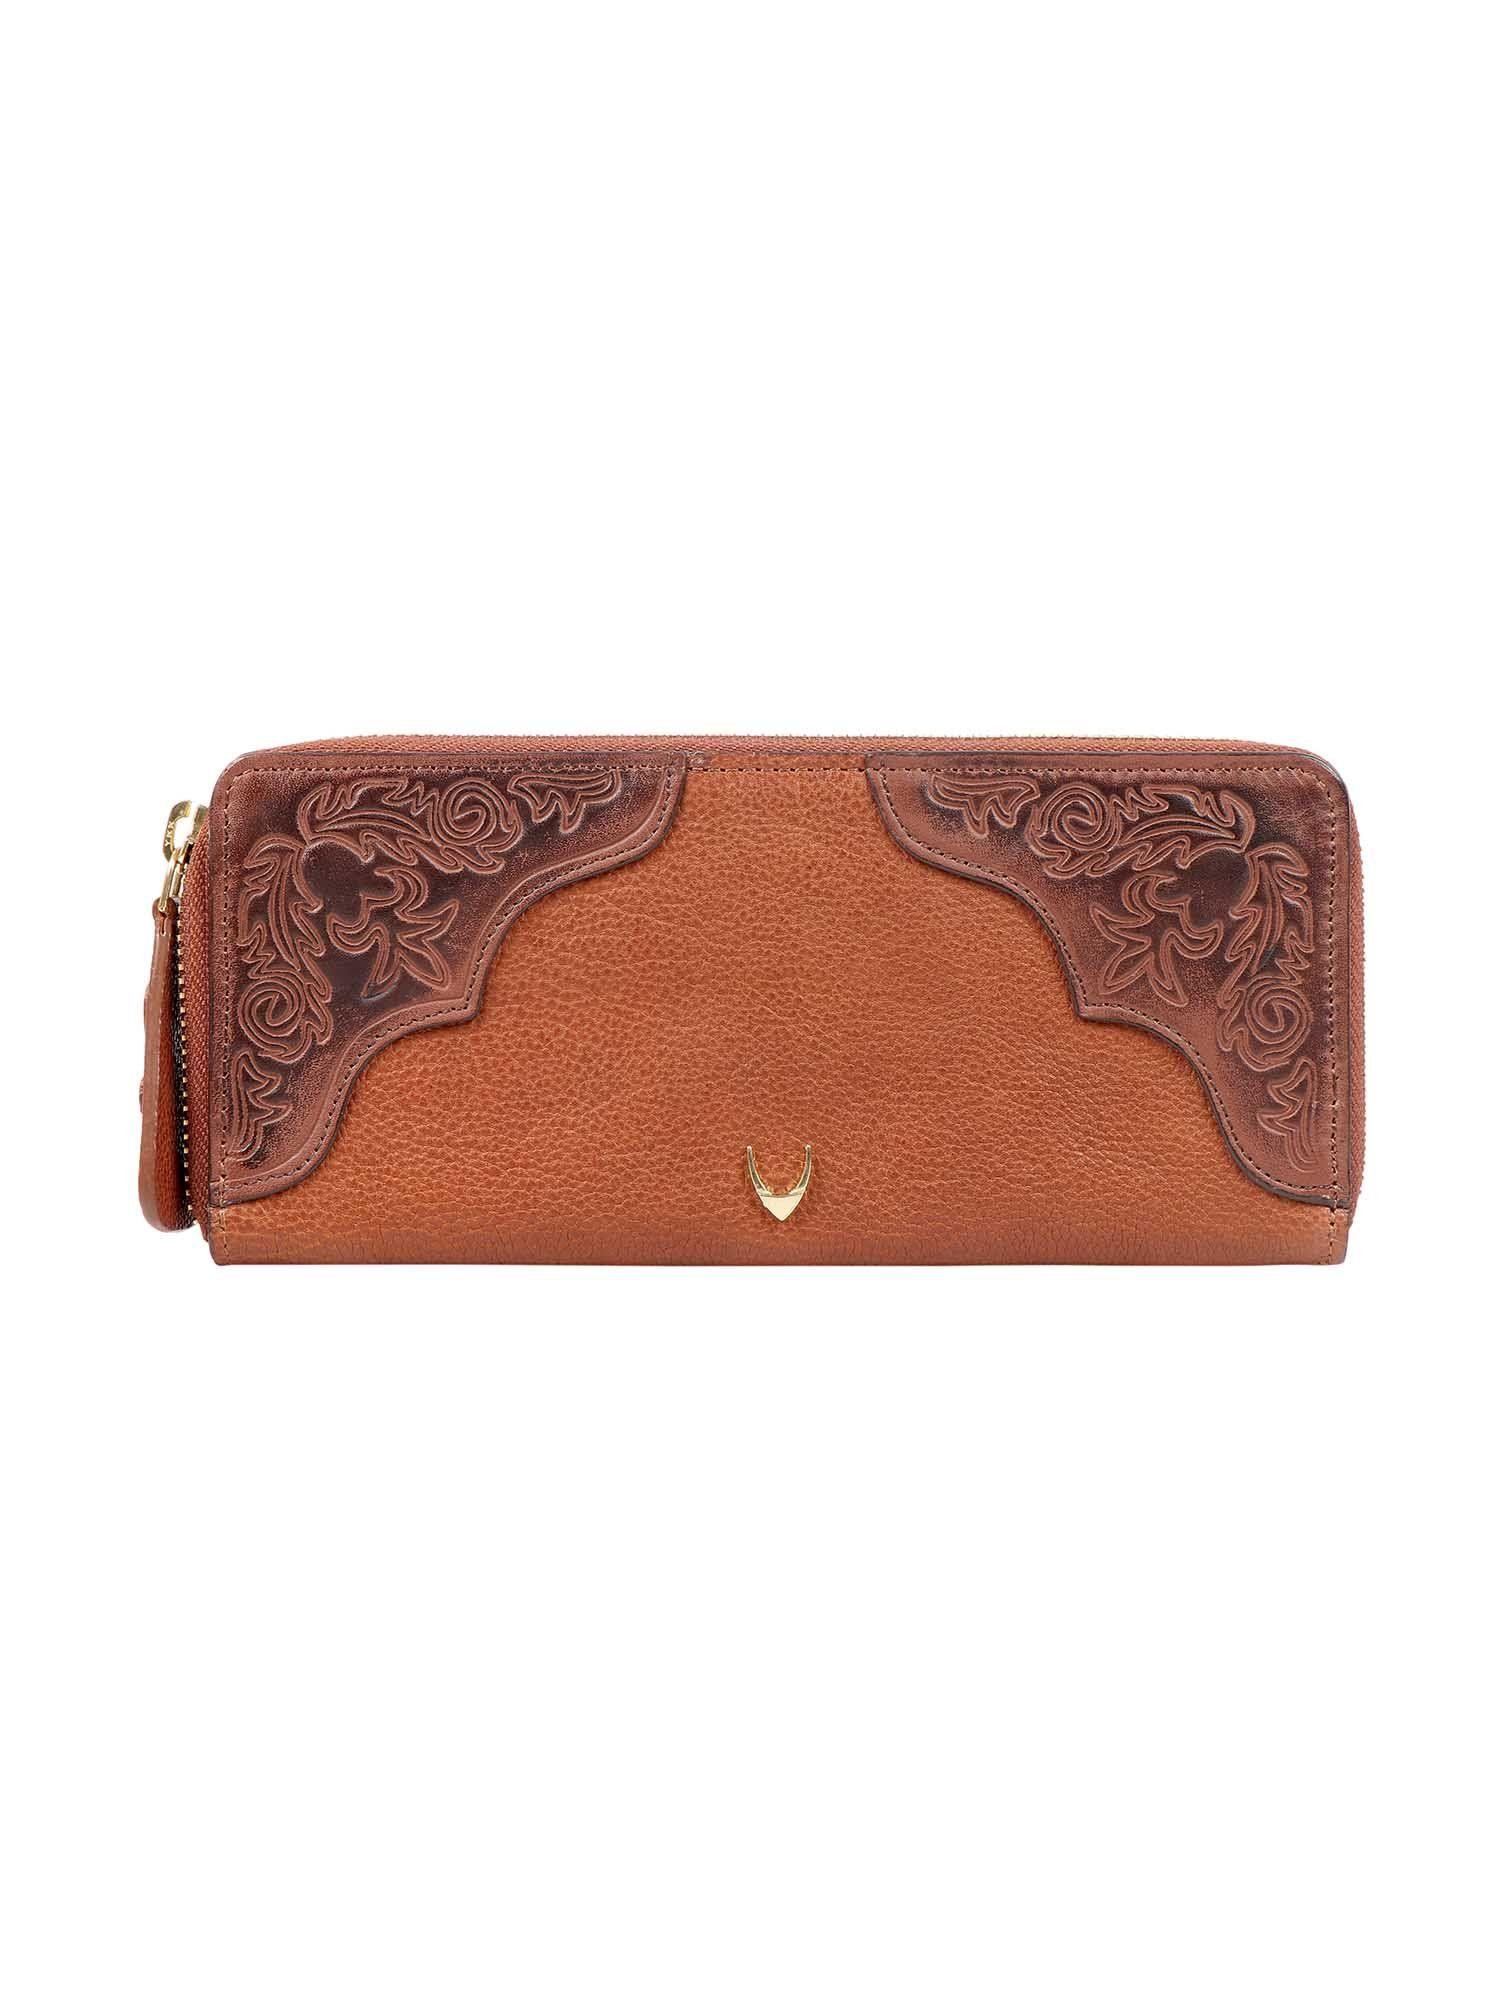 belle star w1 (rf) tan leather women's wallet